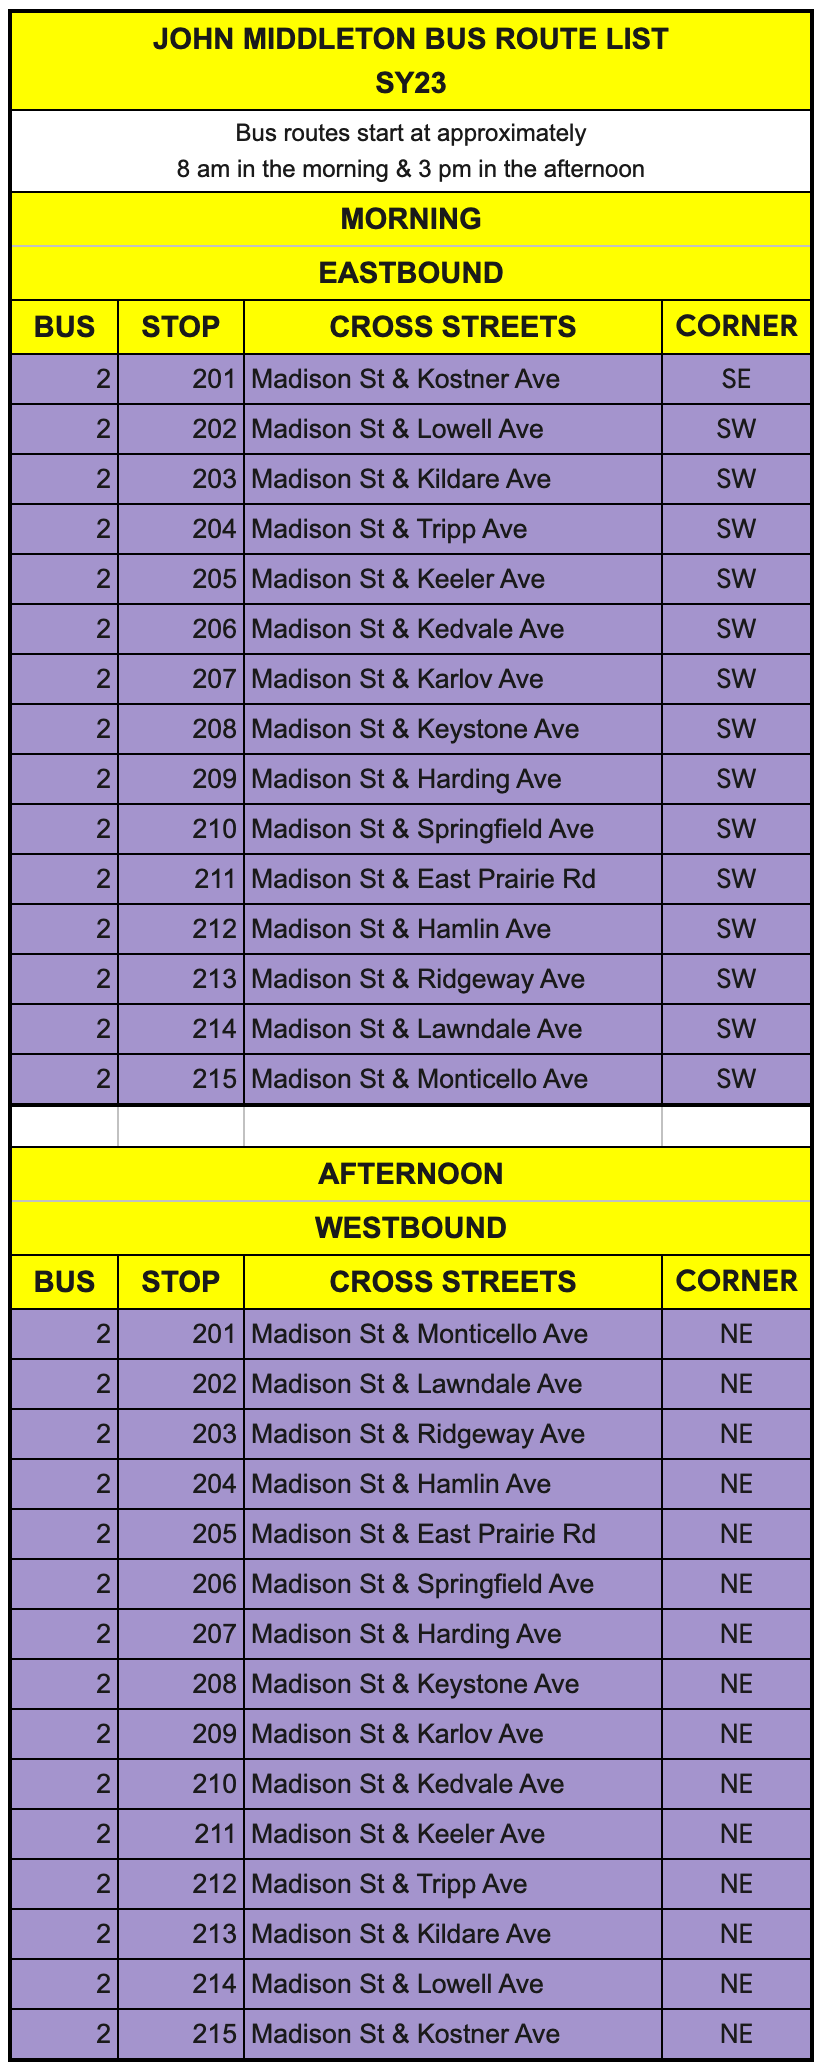 Bus #2 Route List